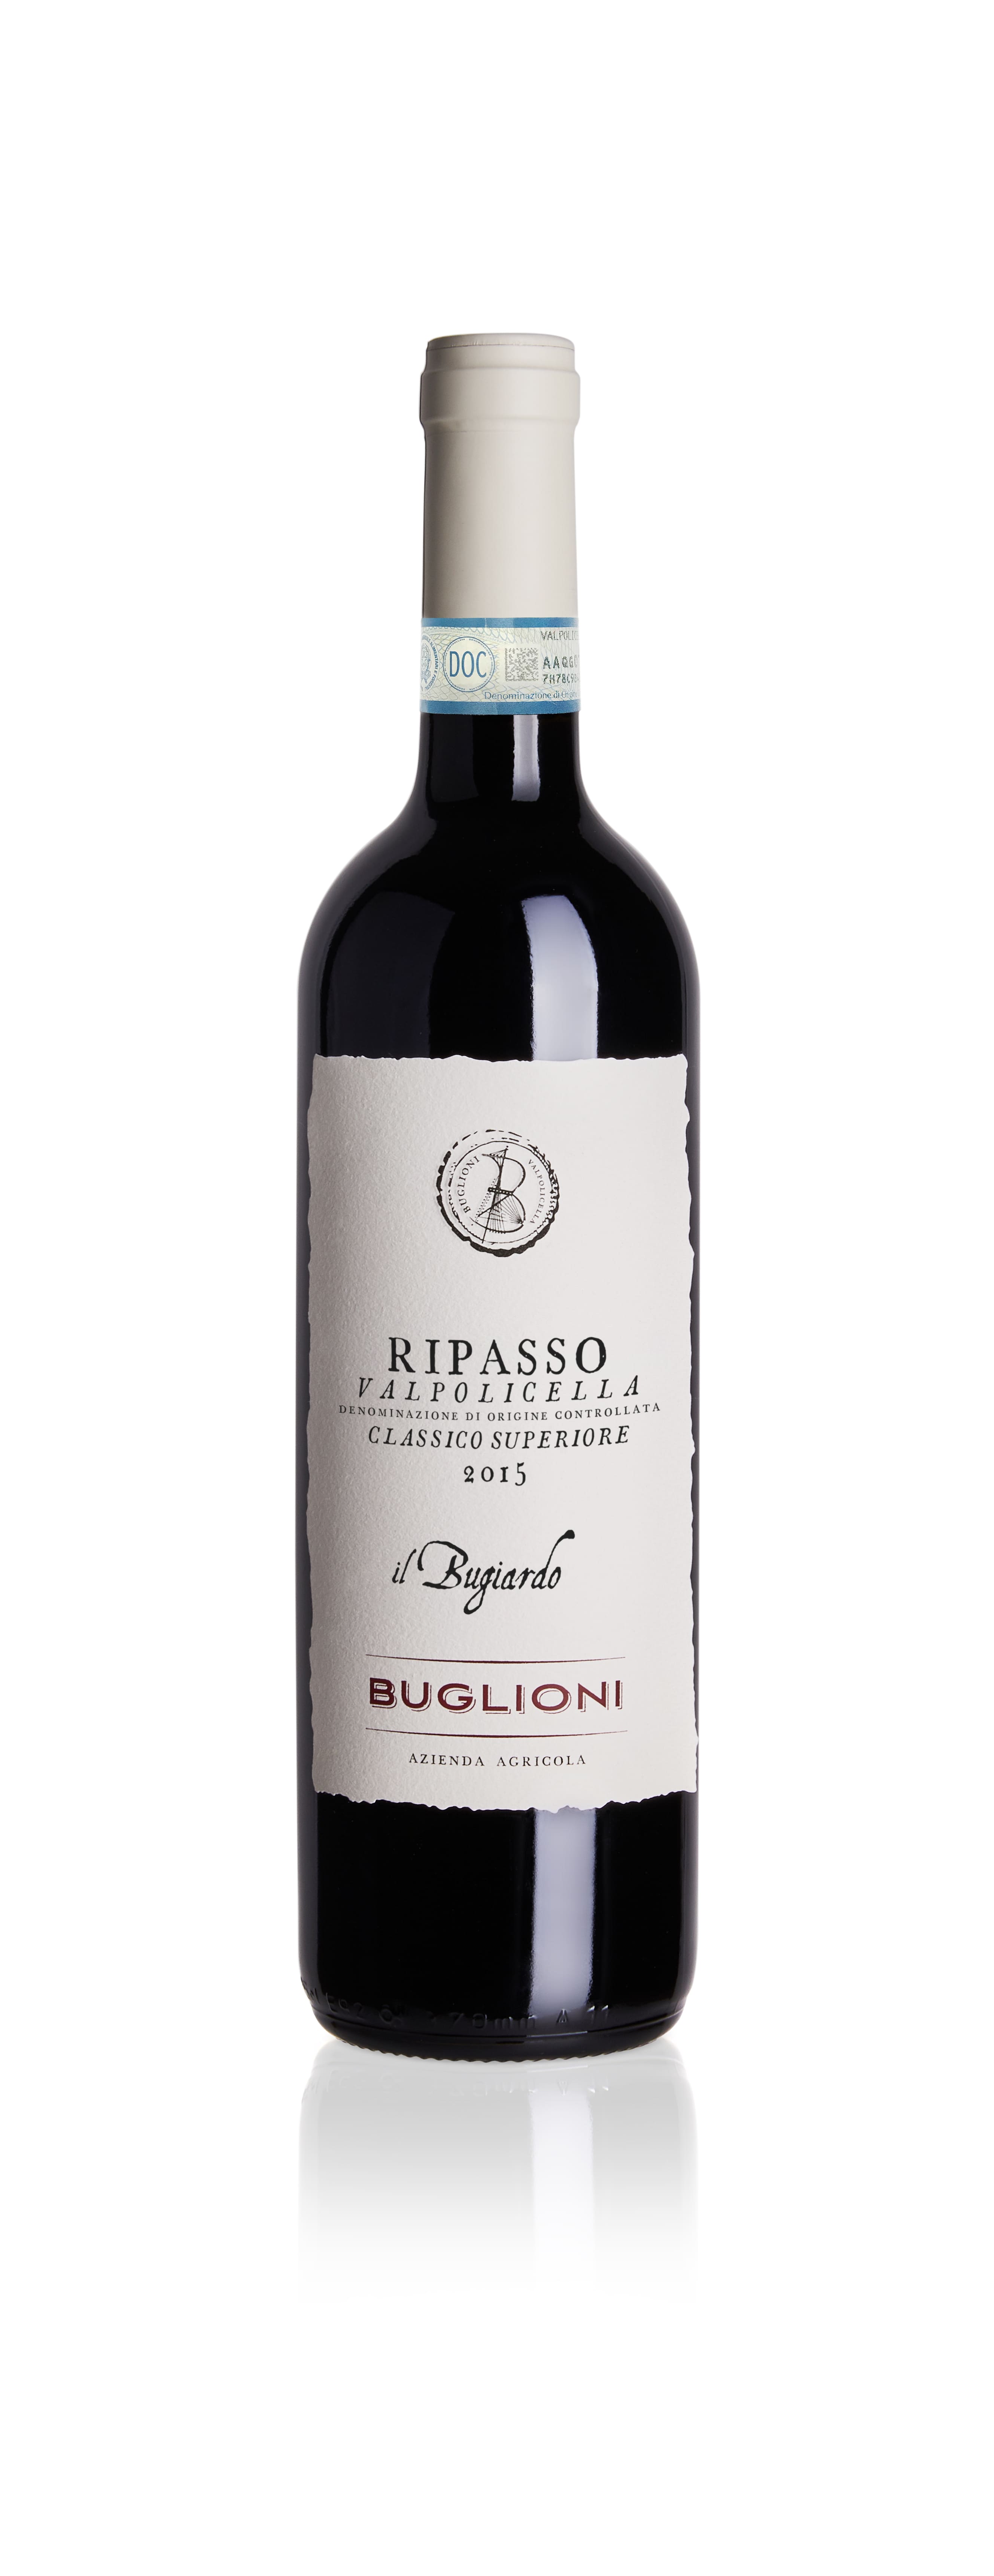 Buglioni Il Bugiardo 2015 front new label.jpg